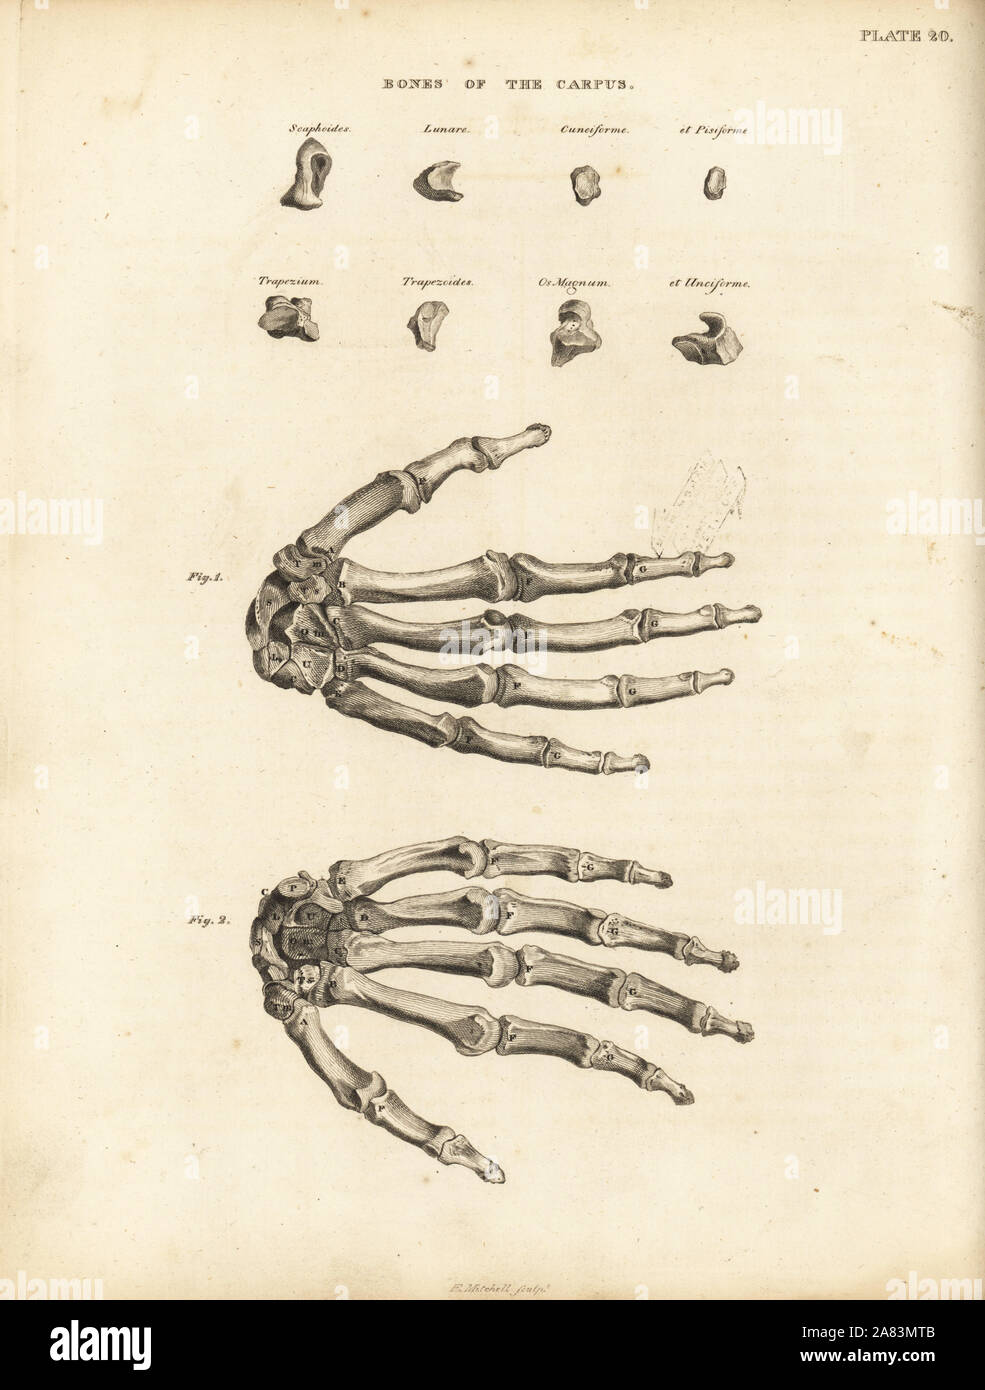 Le ossa del carpo e metacarpo e le dita nella mano umana. Incisione su rame di Edward Mitchell dopo una illustrazione anatomica da John Barclay è una serie di incisioni di scheletro umano, MacLachlan e Stewart, Edimburgo, 1824. Foto Stock